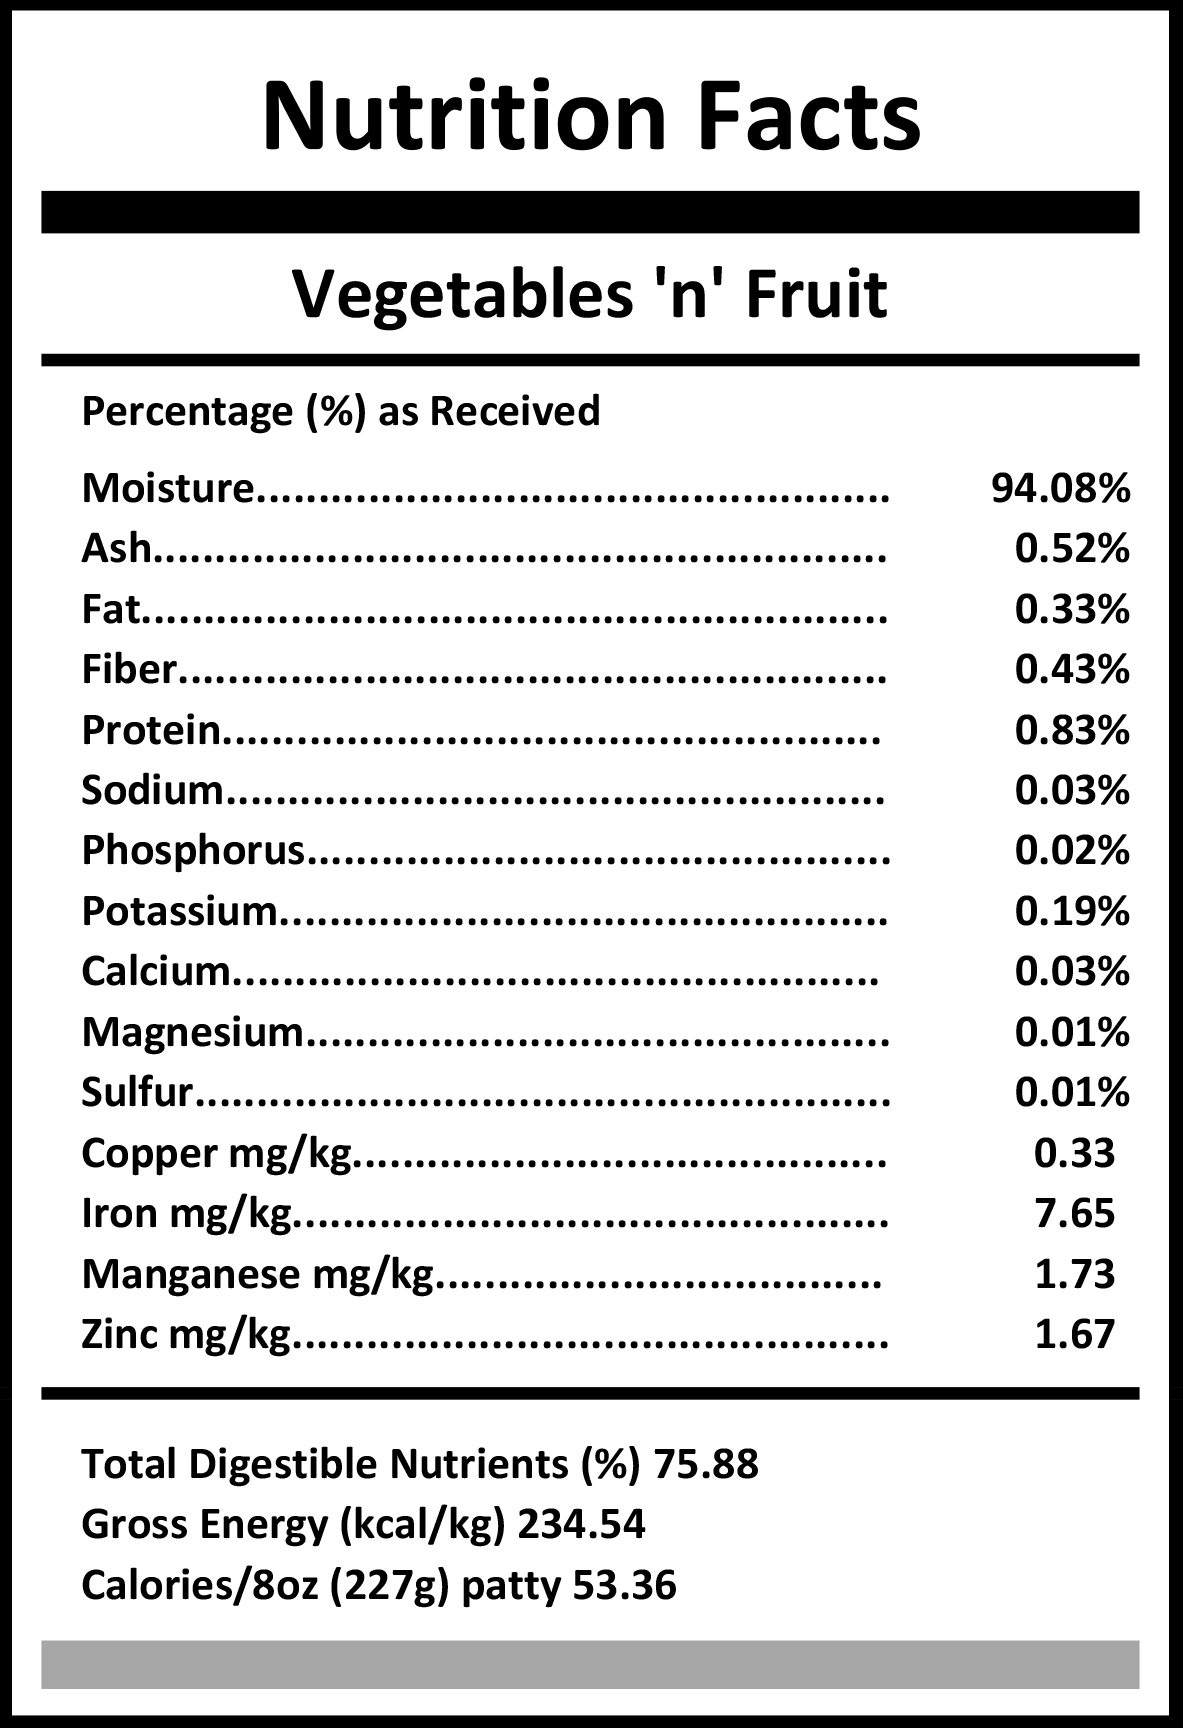 veg n fruit 2019 2